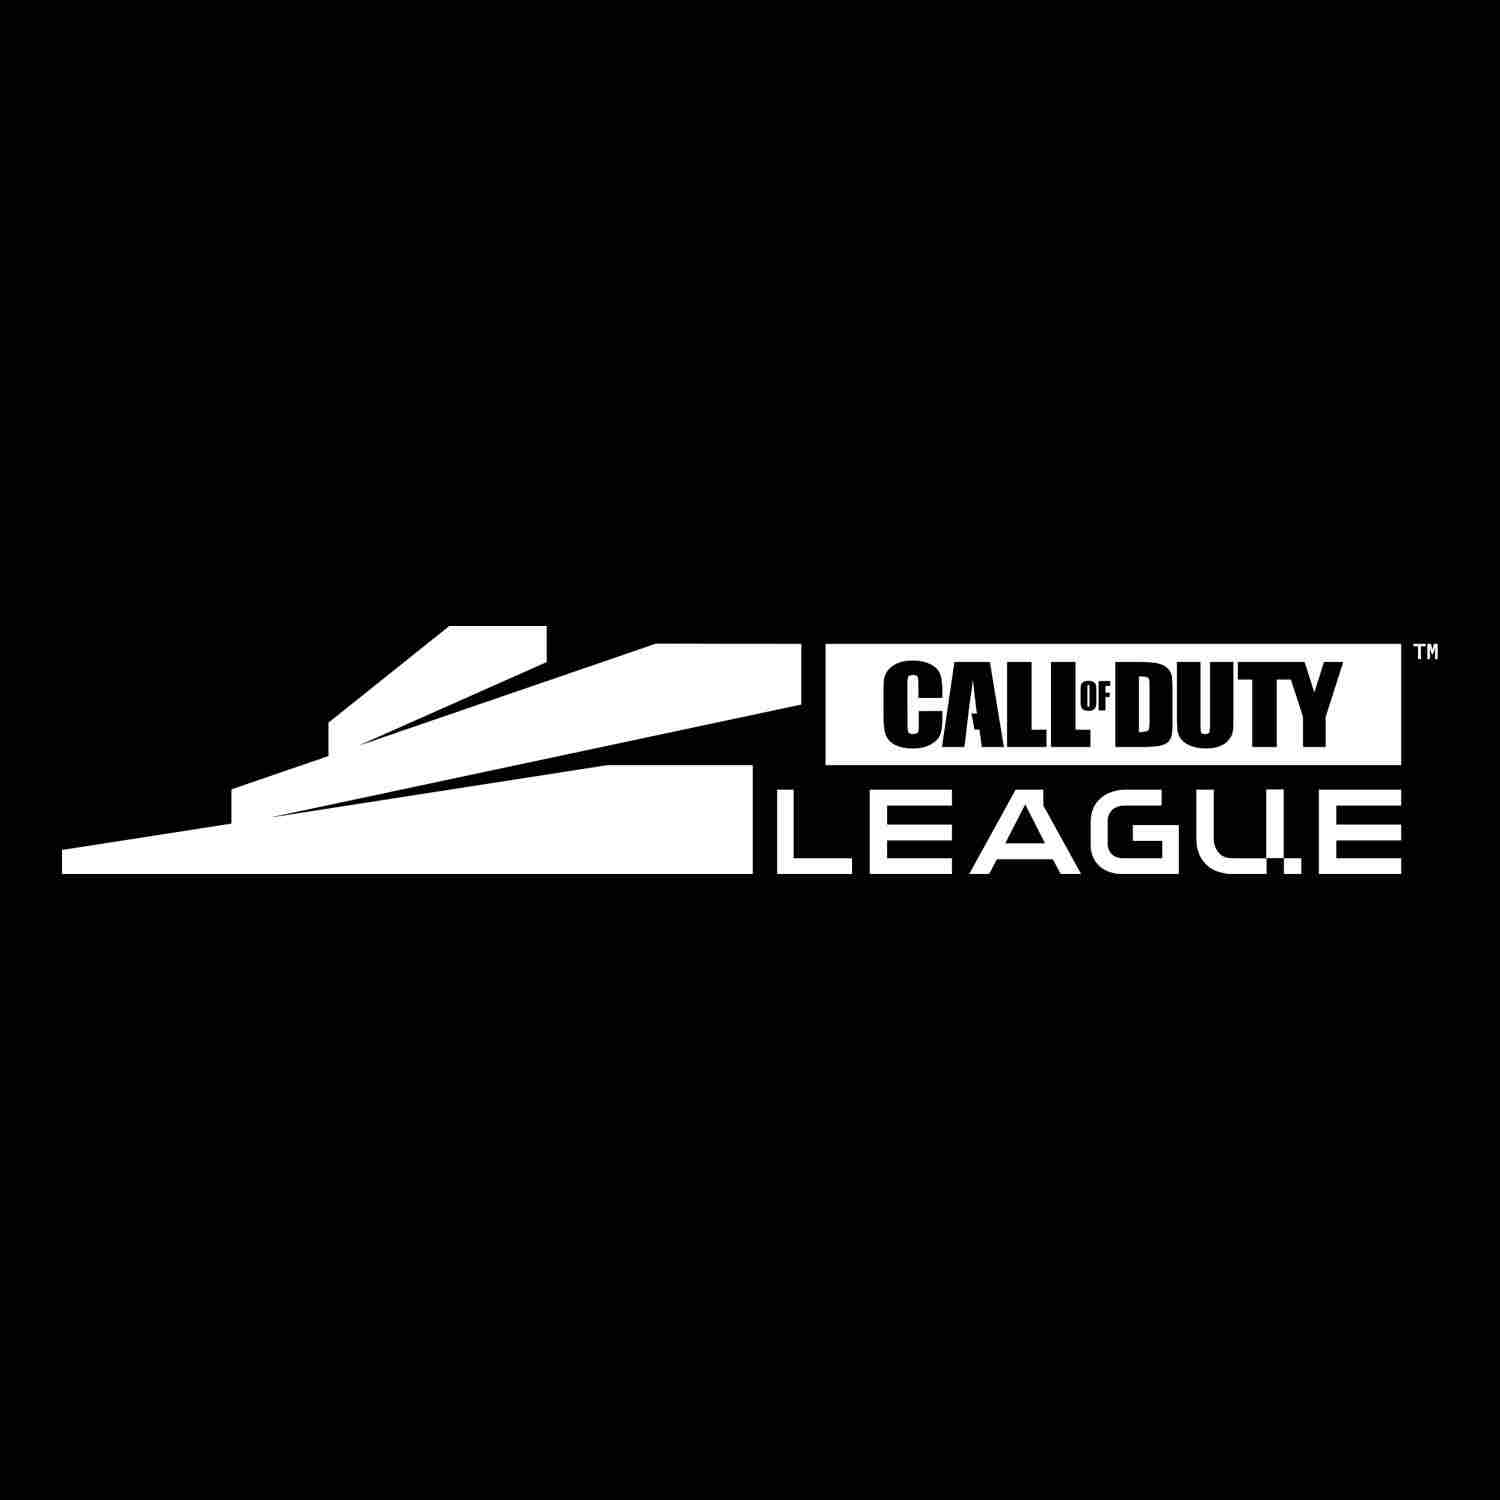 Ejército norteamericano cancela su sponsorship a la Call of Duty League